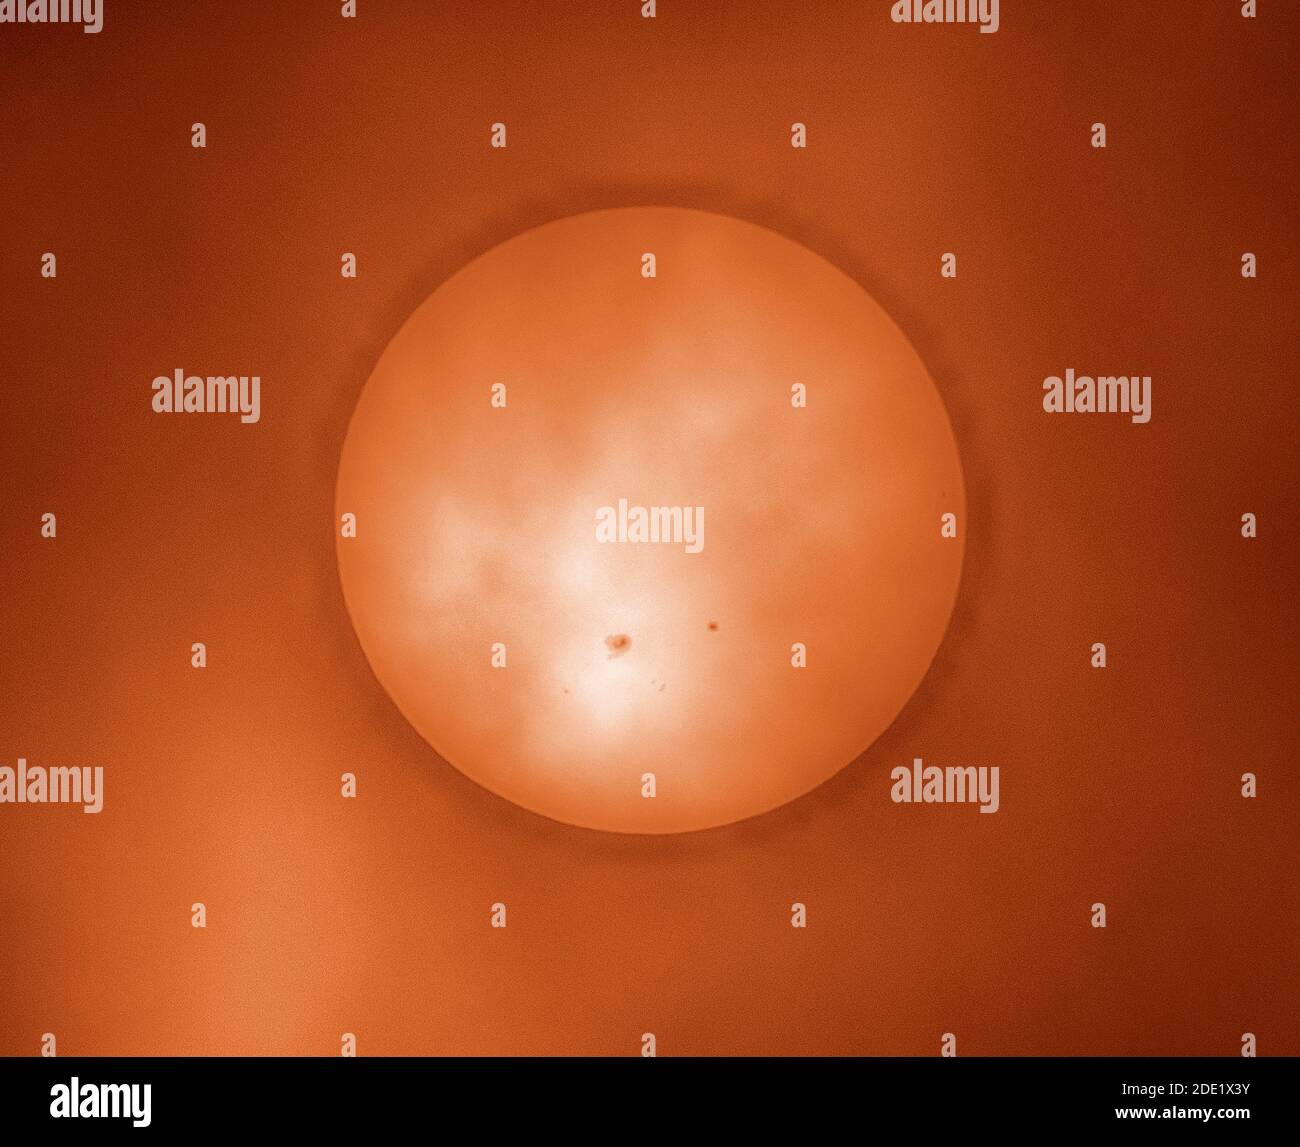 London, Großbritannien. 28. November 2020. Wolke und Nebel erzeugen einen Filter, durch den ein massiver Sonnenfleck auf einer wolkigen Sonne sichtbar ist. Dieser Sonnenfleck, AR2786, der größte seit Jahren und ein Vielfaches des Durchmessers des Planeten Erde, ist eine potenzielle Quelle für Sonneneruptionen der M-Klasse. Der kleinere Sonnentopf rechts ist AR2785. Dieses Bild wurde eingefärbt. Quelle: Malcolm Park/Alamy Live News. Stockfoto